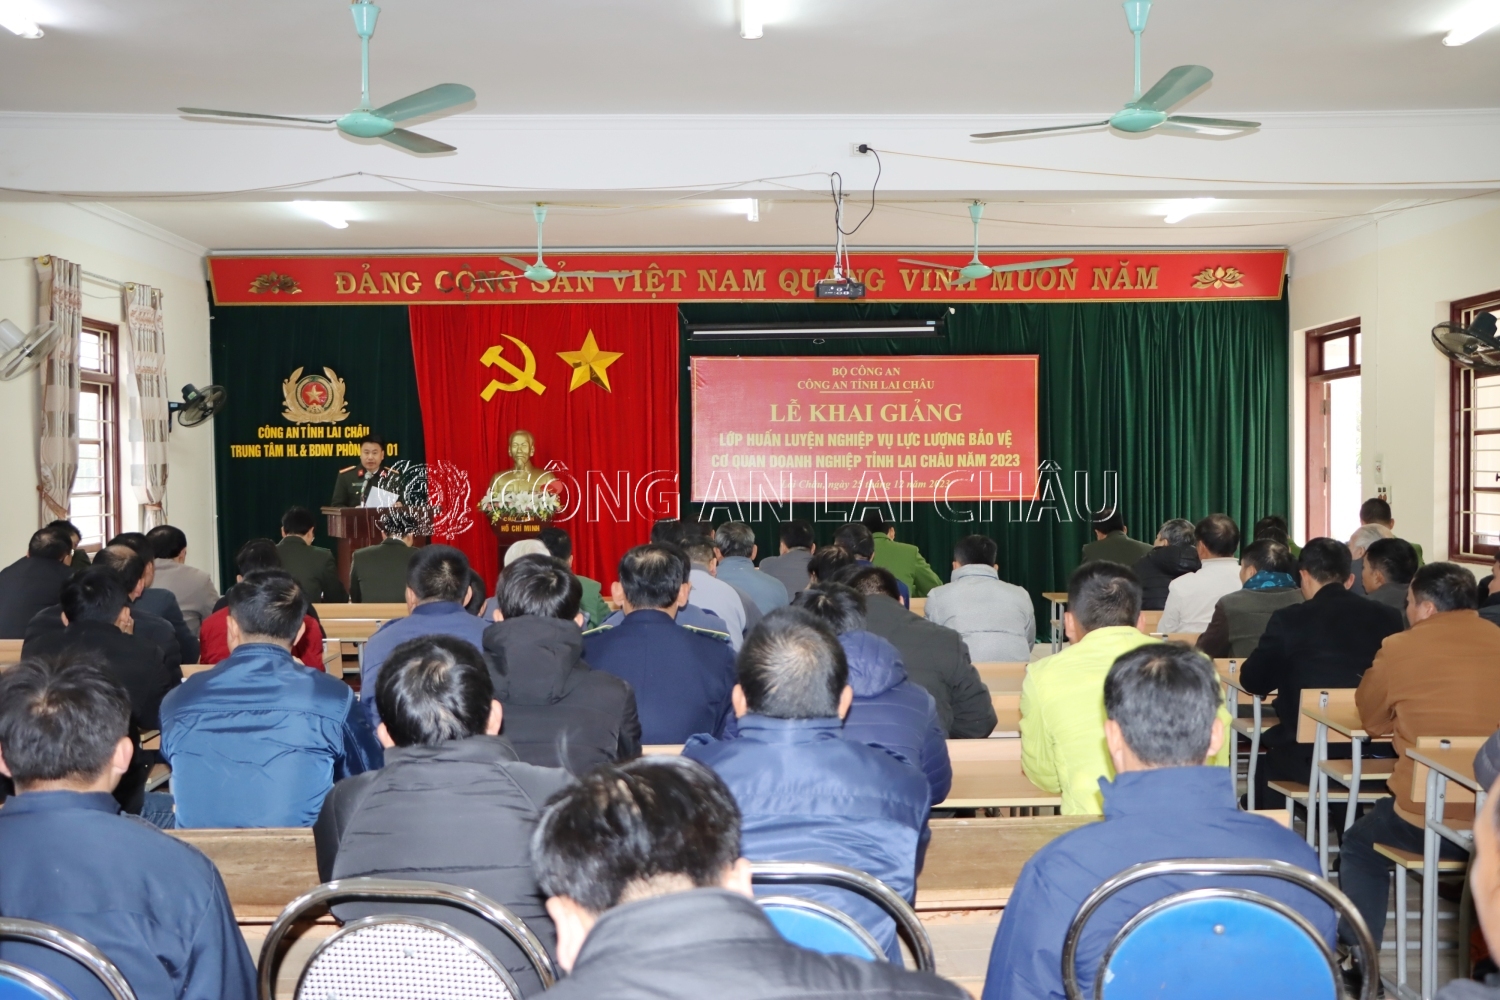 Thiếu tá Thân Việt Cường – Phó Trưởng phòng An ninh kinh tế Công an tỉnh phát biểu khai giảng